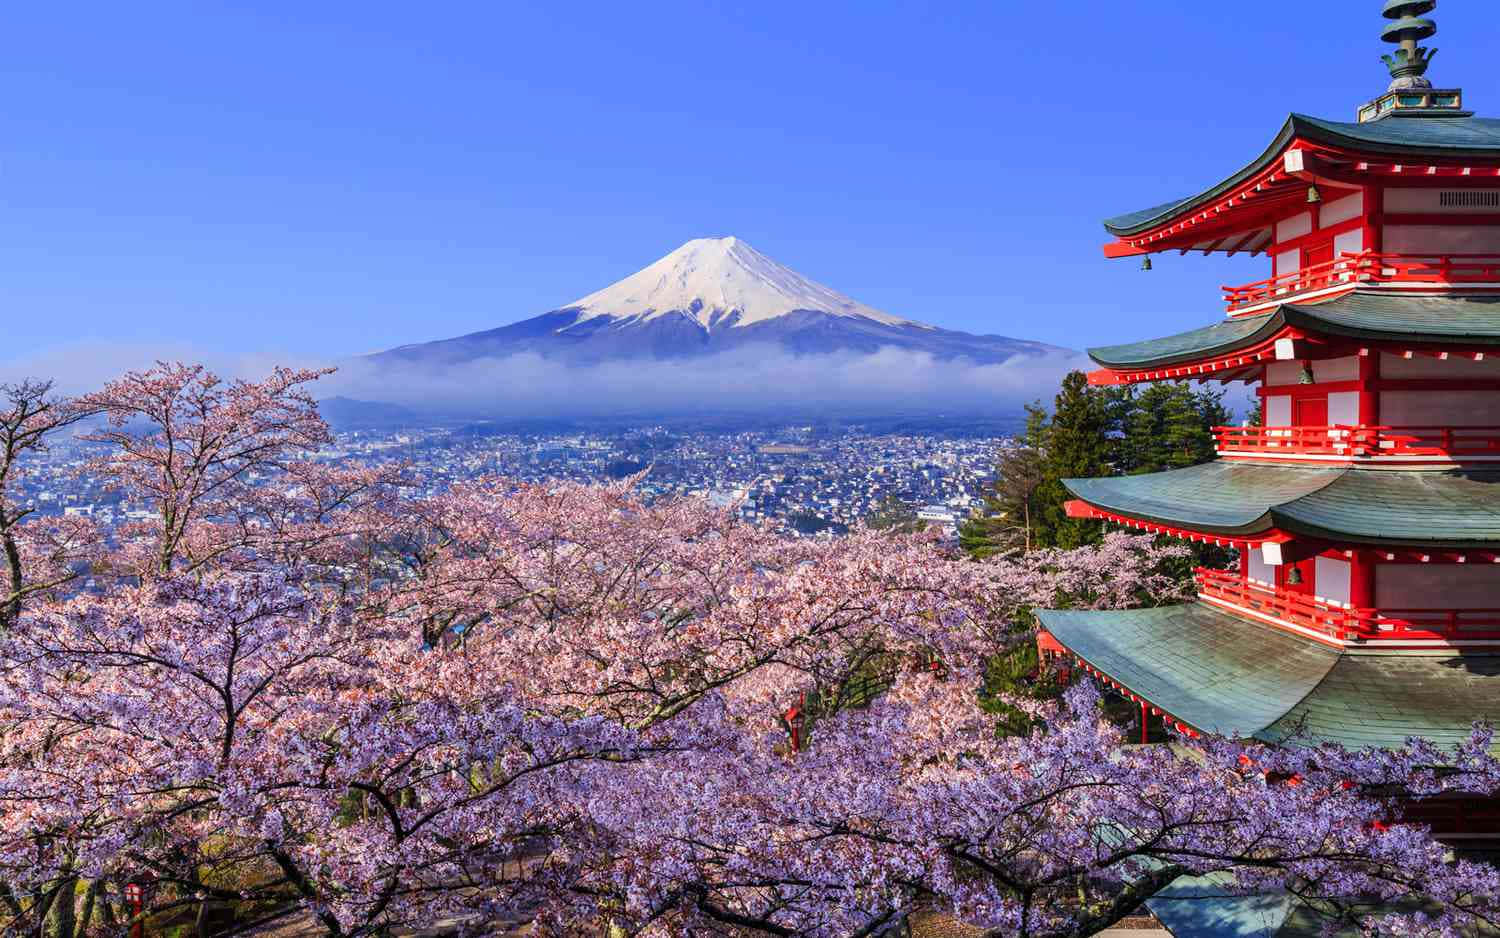 Vistaaerea Dell'immagine Dei Ciliegi In Fiore Del Monte Fuji